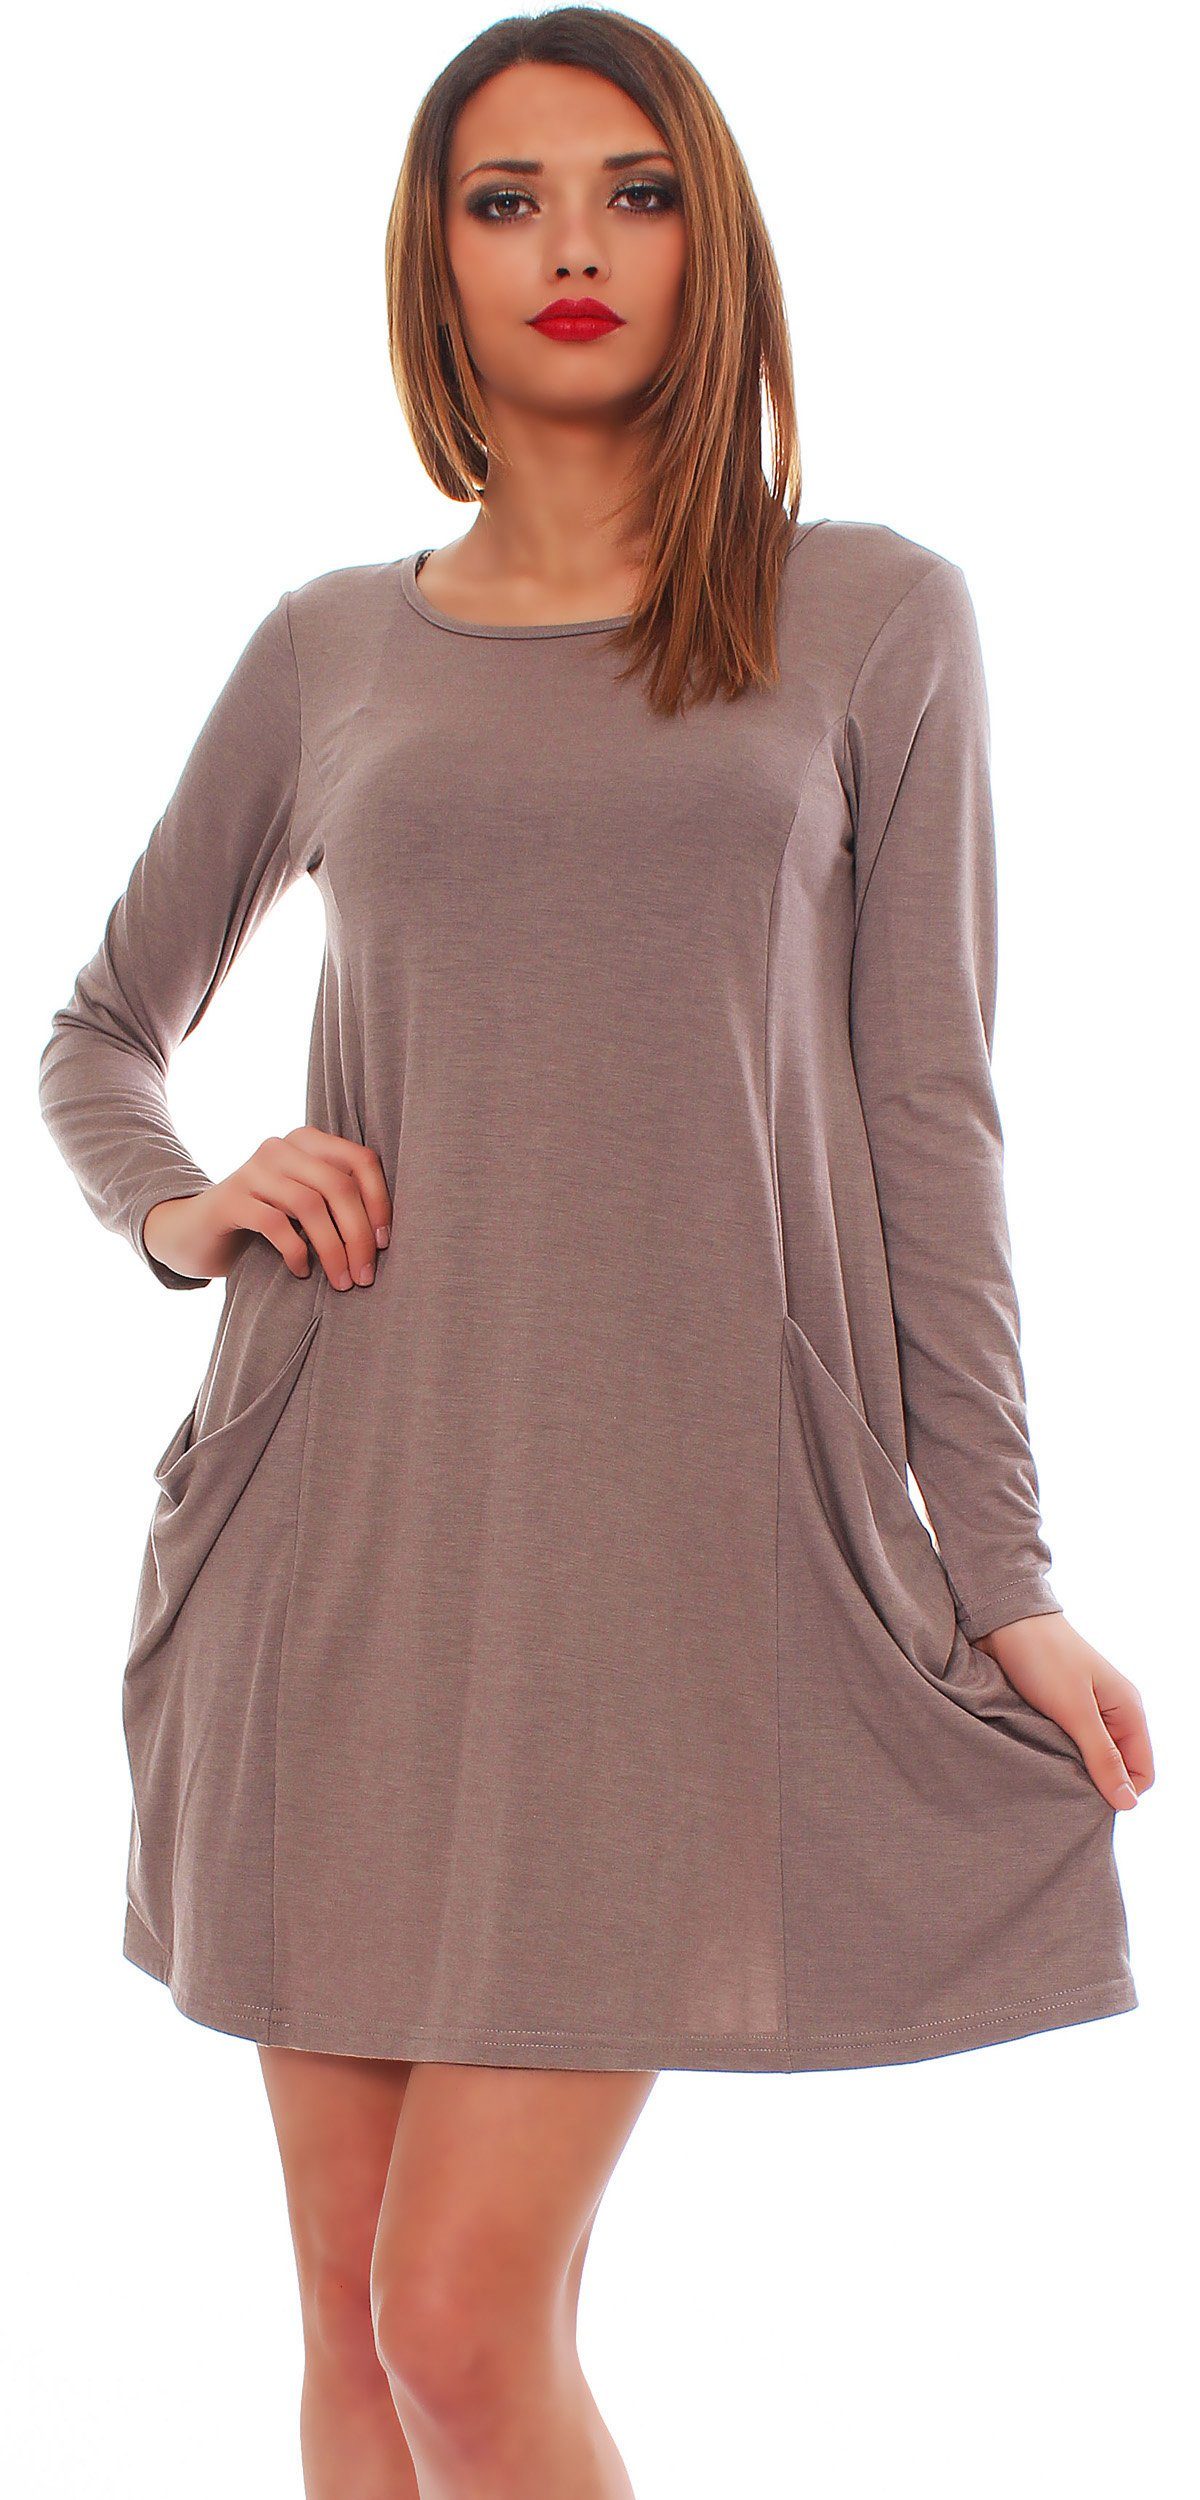 Pulli Tunika Taschen Minikleid 6514 Kleid Cappuccino_lang A-Linien-Kleid Longshirt Mississhop mit Tunika